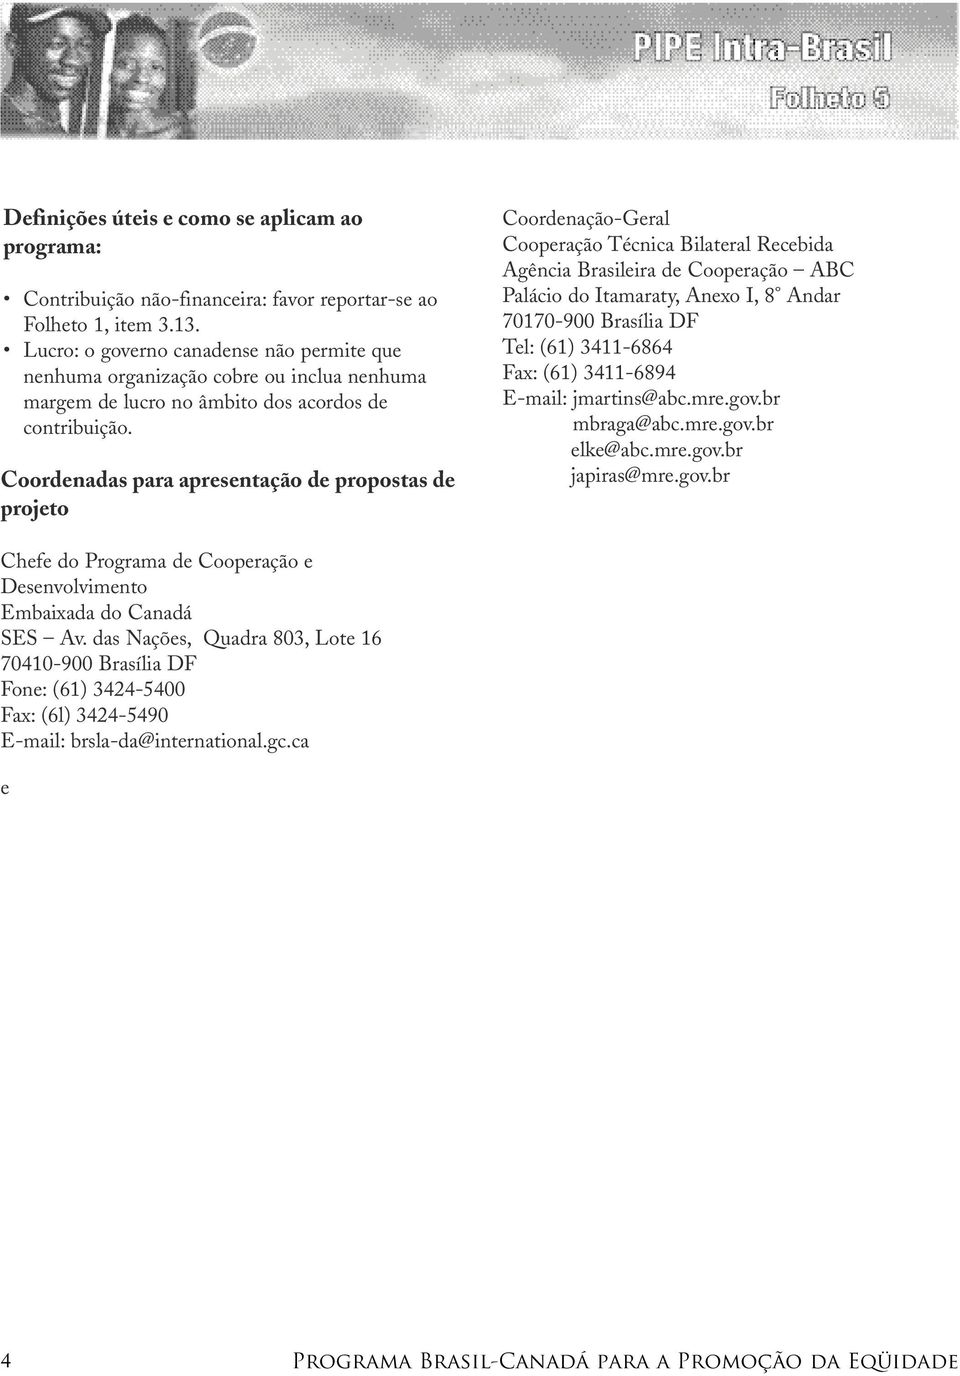 Coordenadas para apresentação de propostas de projeto Coordenação-Geral Cooperação Técnica Bilateral Recebida Agência Brasileira de Cooperação ABC Palácio do Itamaraty, Anexo I, 8 Andar 70170-900